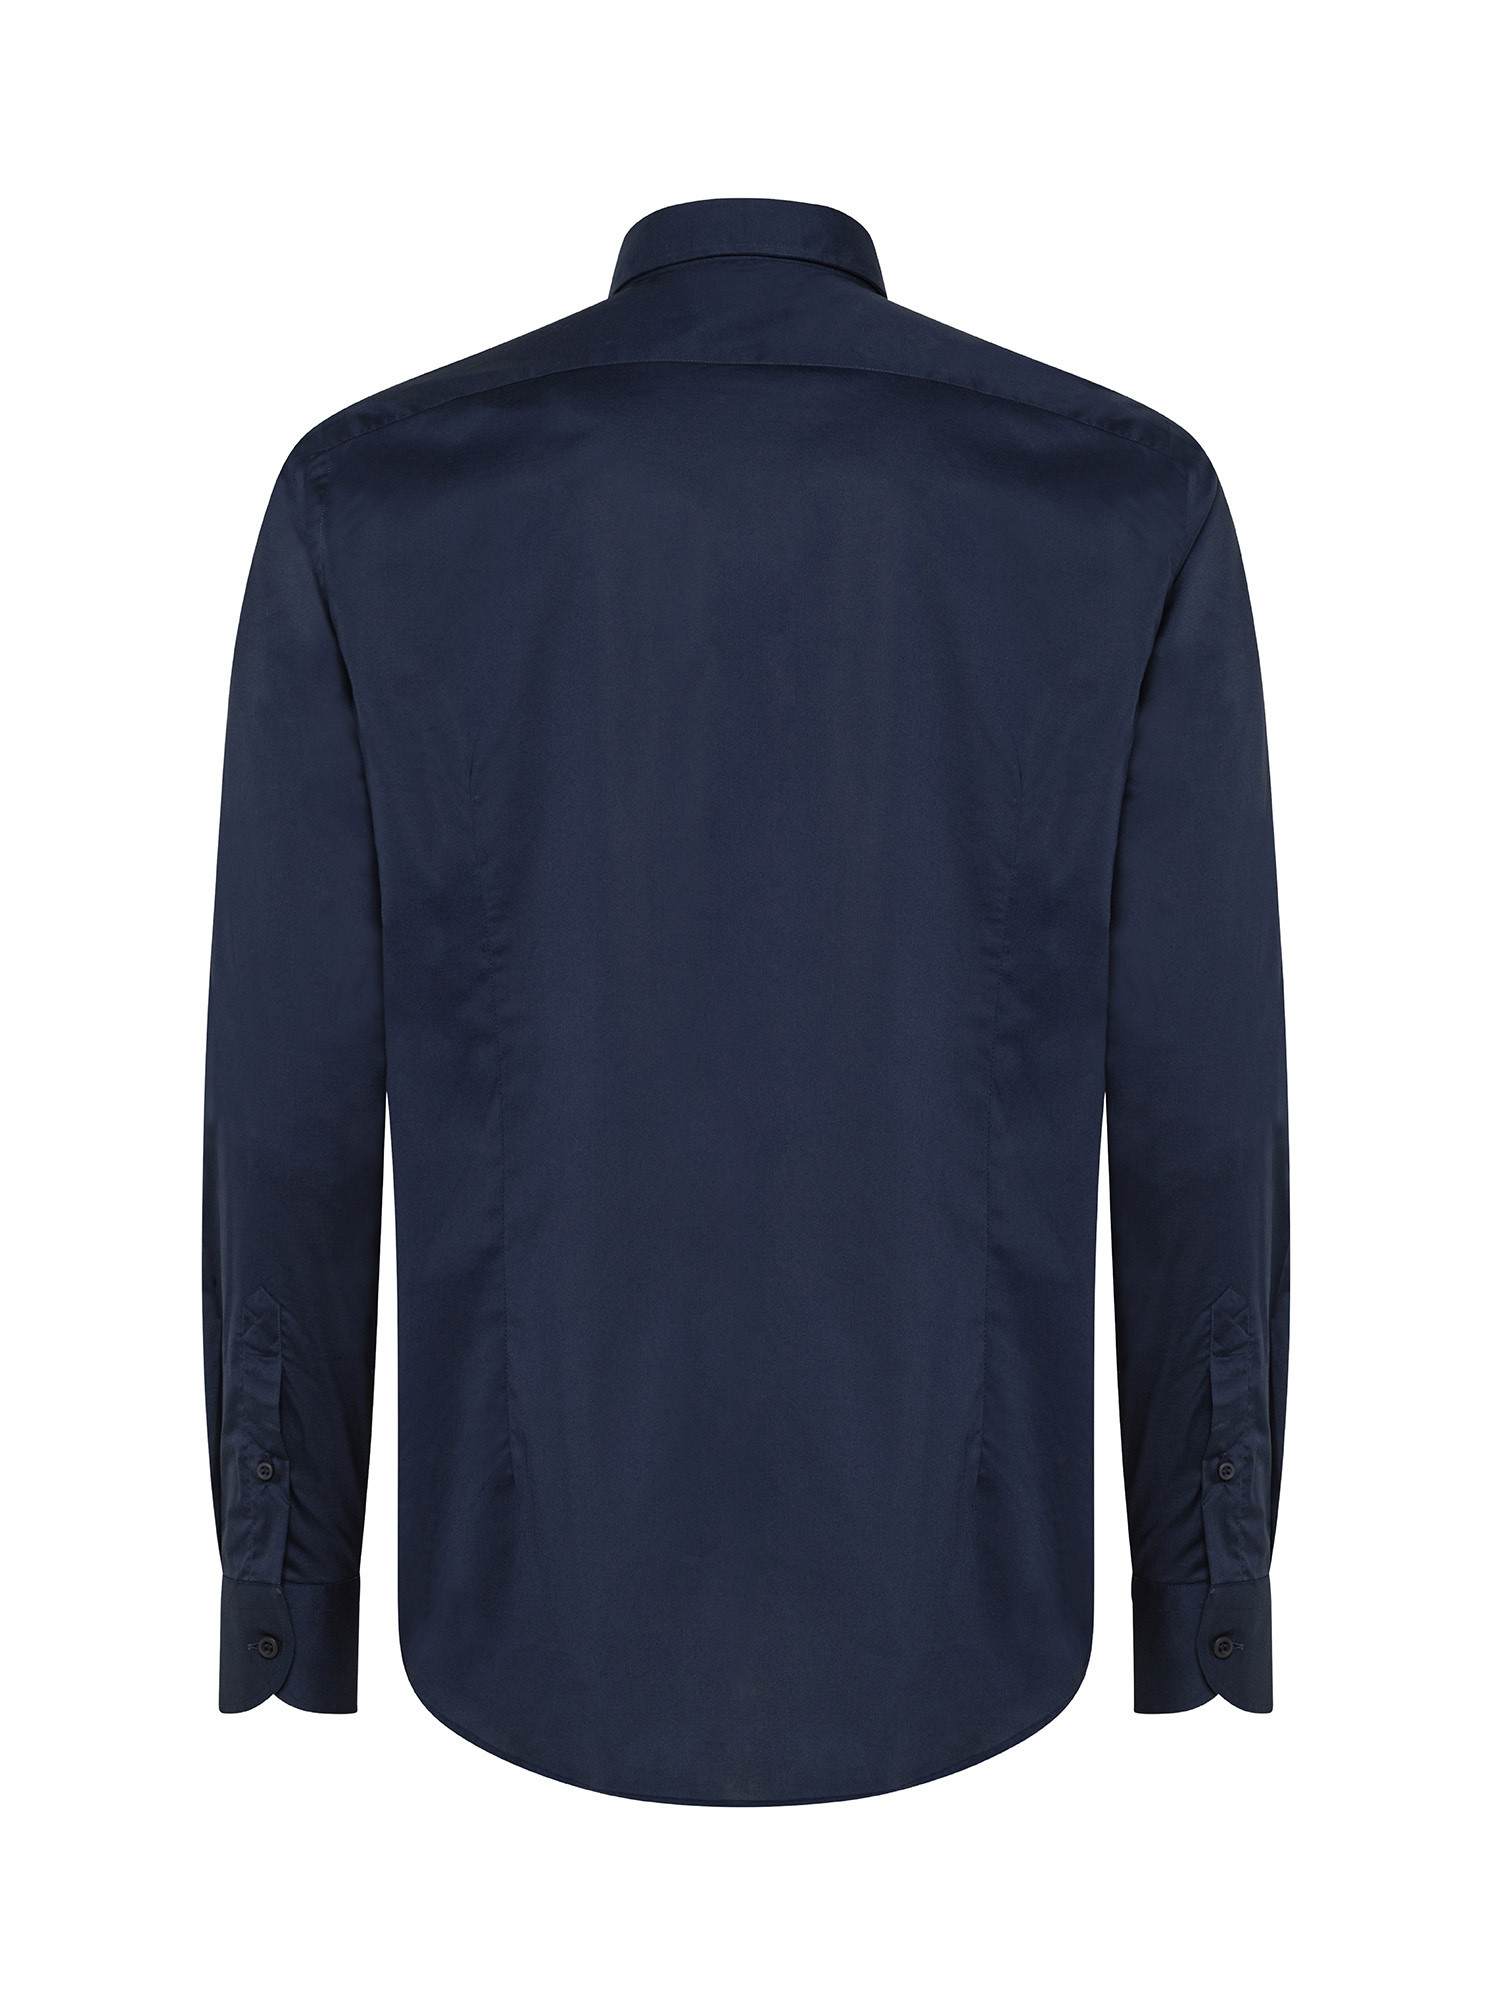 Camicia slim fit in cotone elasticizzato, Blu, large image number 2